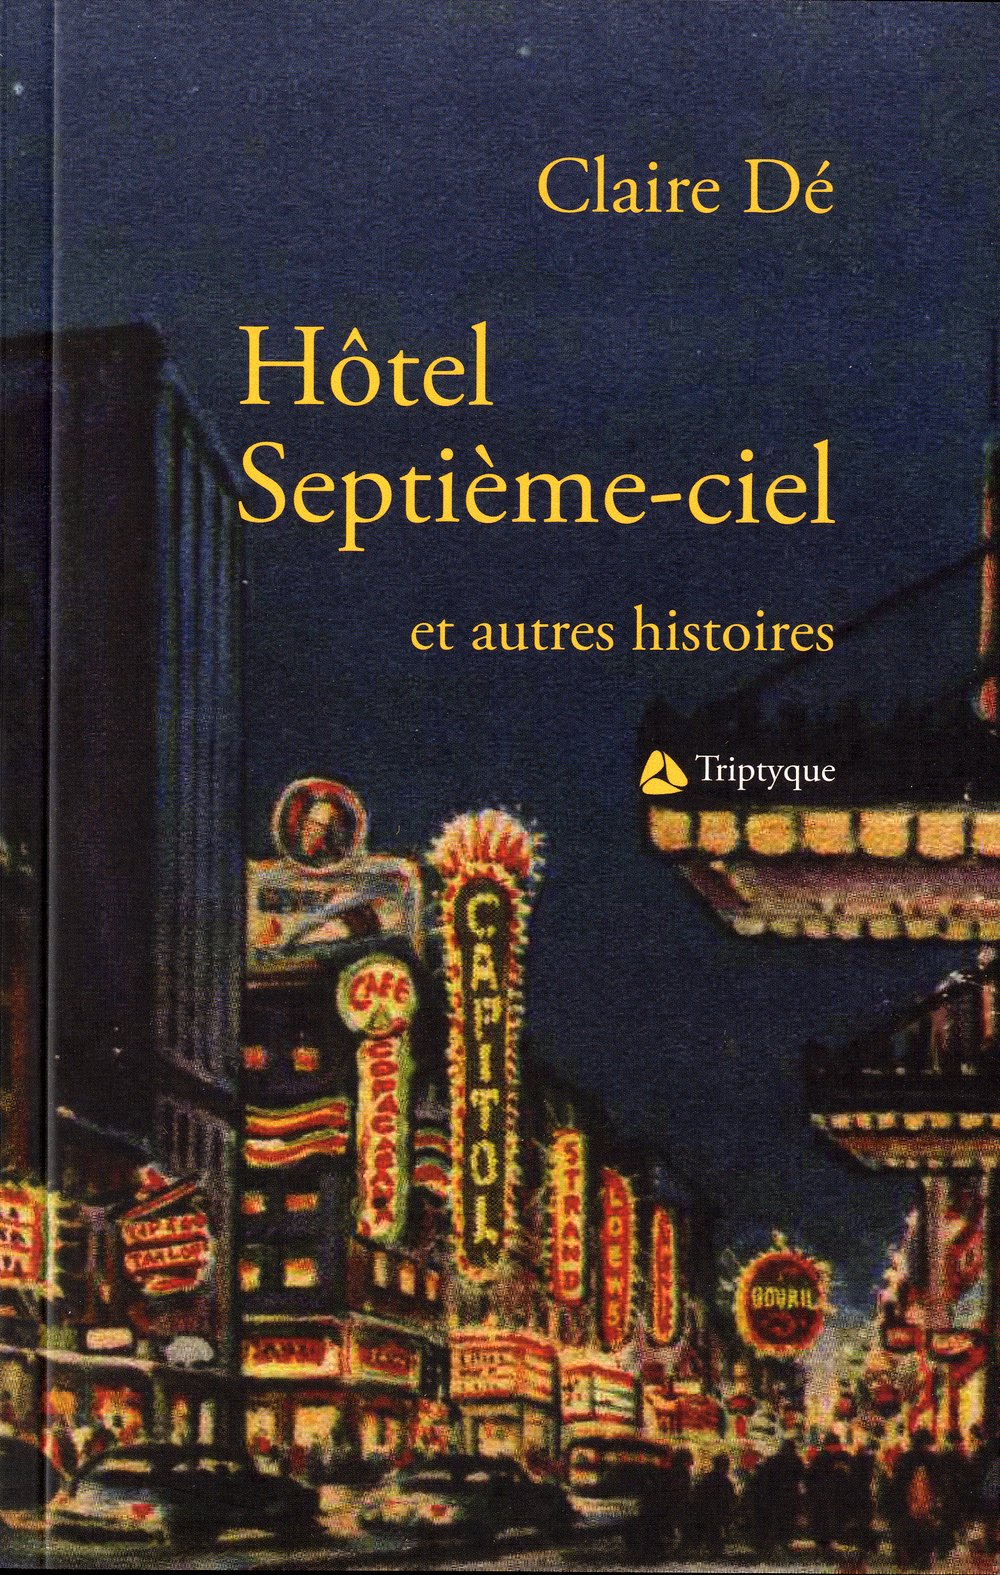 Livre ISBN 2890317269 Hôtel Septième-ciel et autres histoires (Claire Dé)